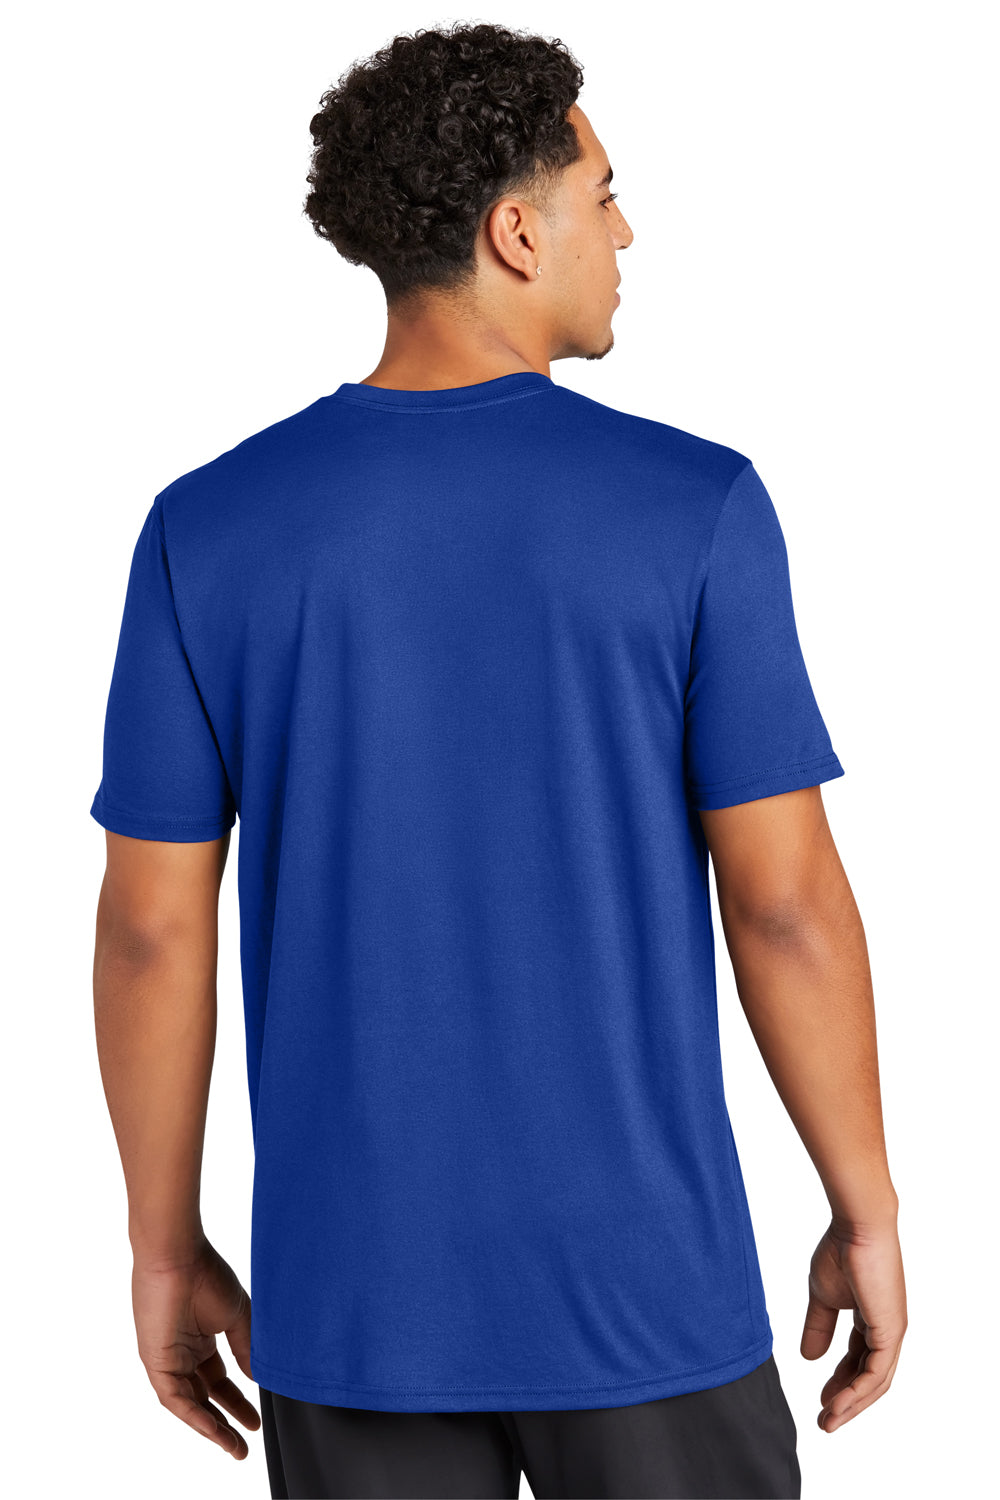 Sport-Tek ST760 Echo Short Sleeve Crewneck T-Shirt True Royal Blue Back